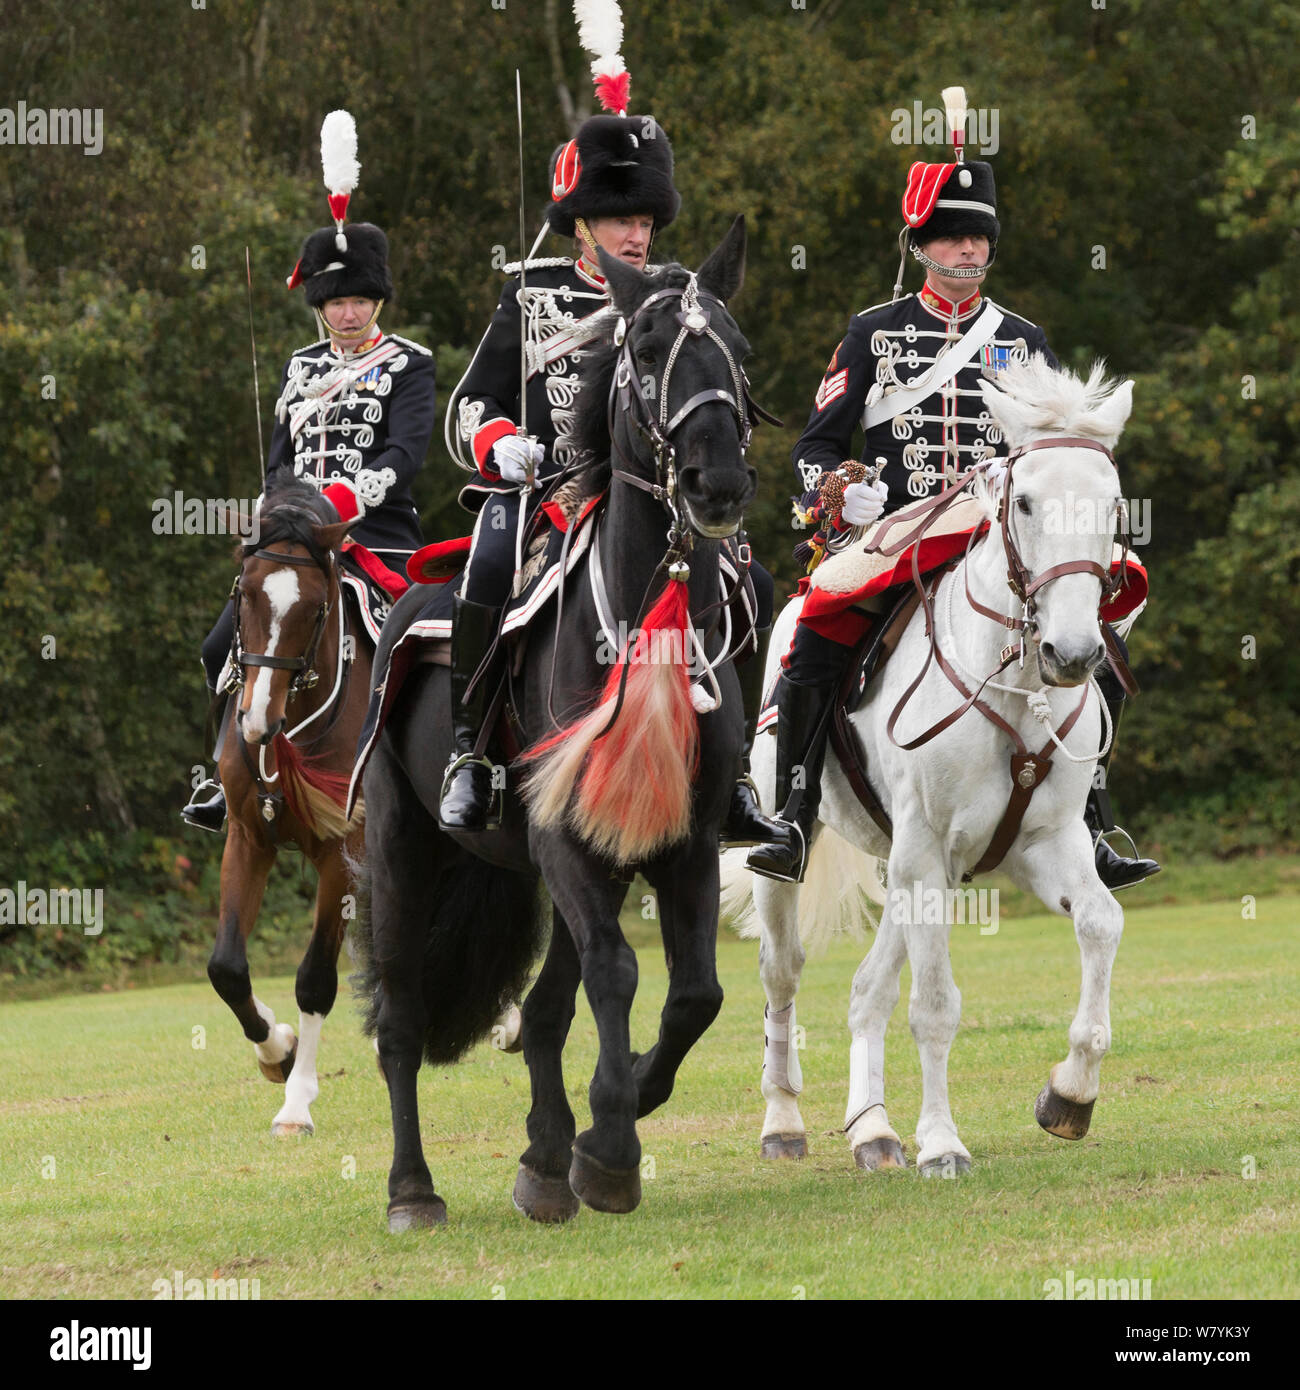 L' onorevole compagnia di artiglieria, la seconda più antica di organizzazione militare nel mondo, sfilate per la sua revisione annuale al Guards Polo Club, Smith Prato, in Windsor Great Park, Regno Unito. Ottobre 2014. Foto Stock